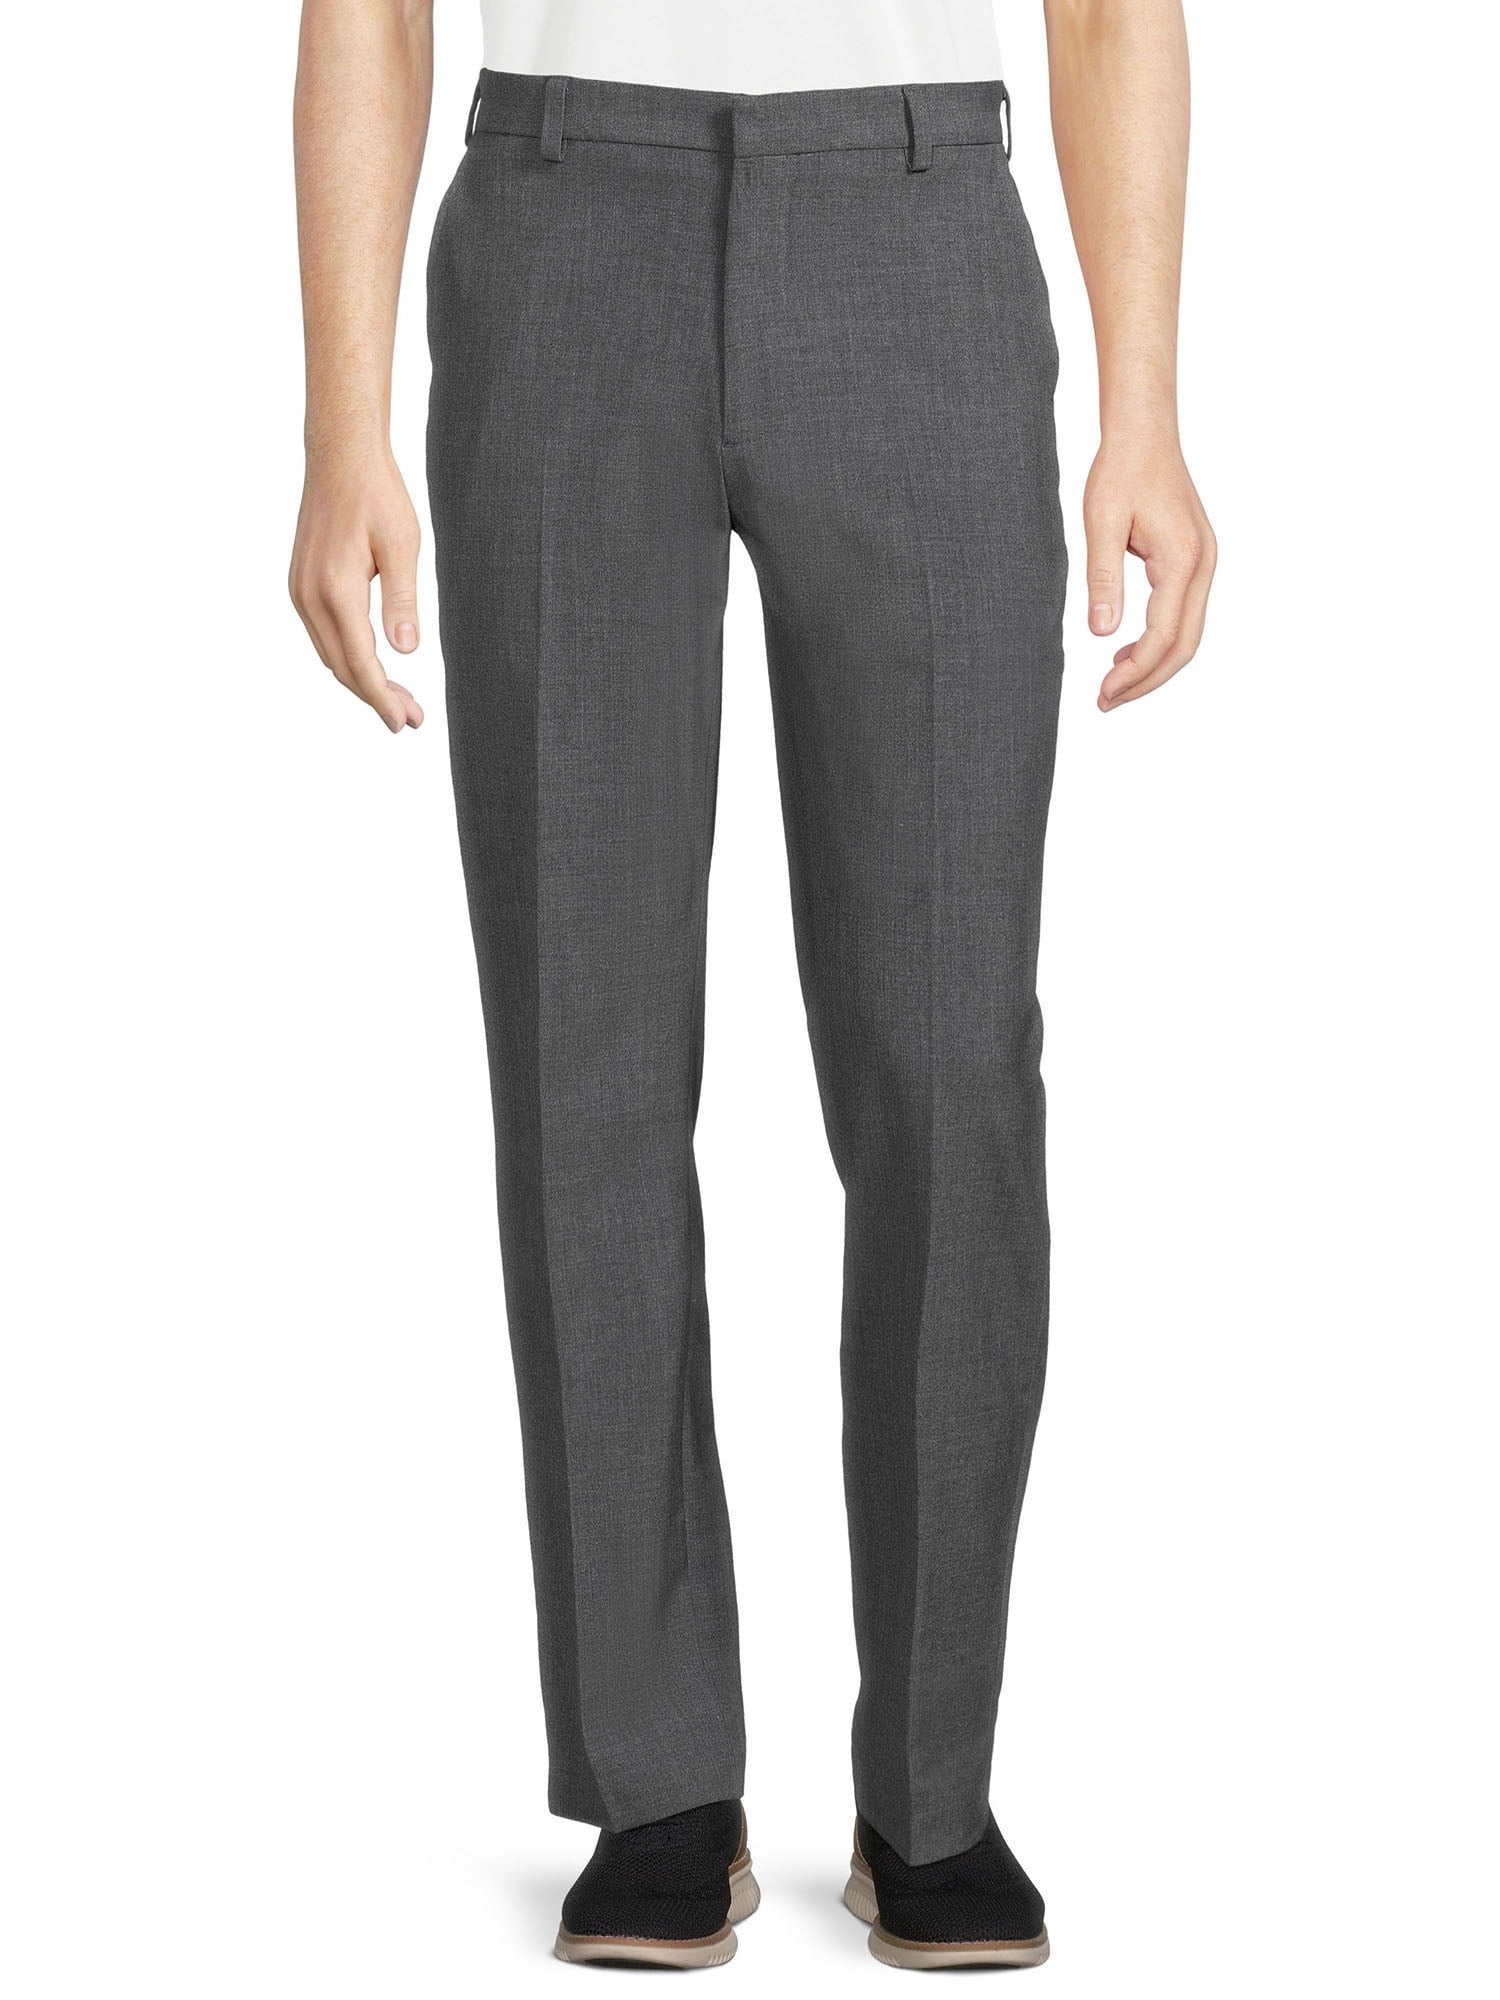 Grey Mens Pants Men Casual Versatile Fashion Stretch Pants Soild Color Slim  Fit Small Feet Suit Trousers  Walmartcom